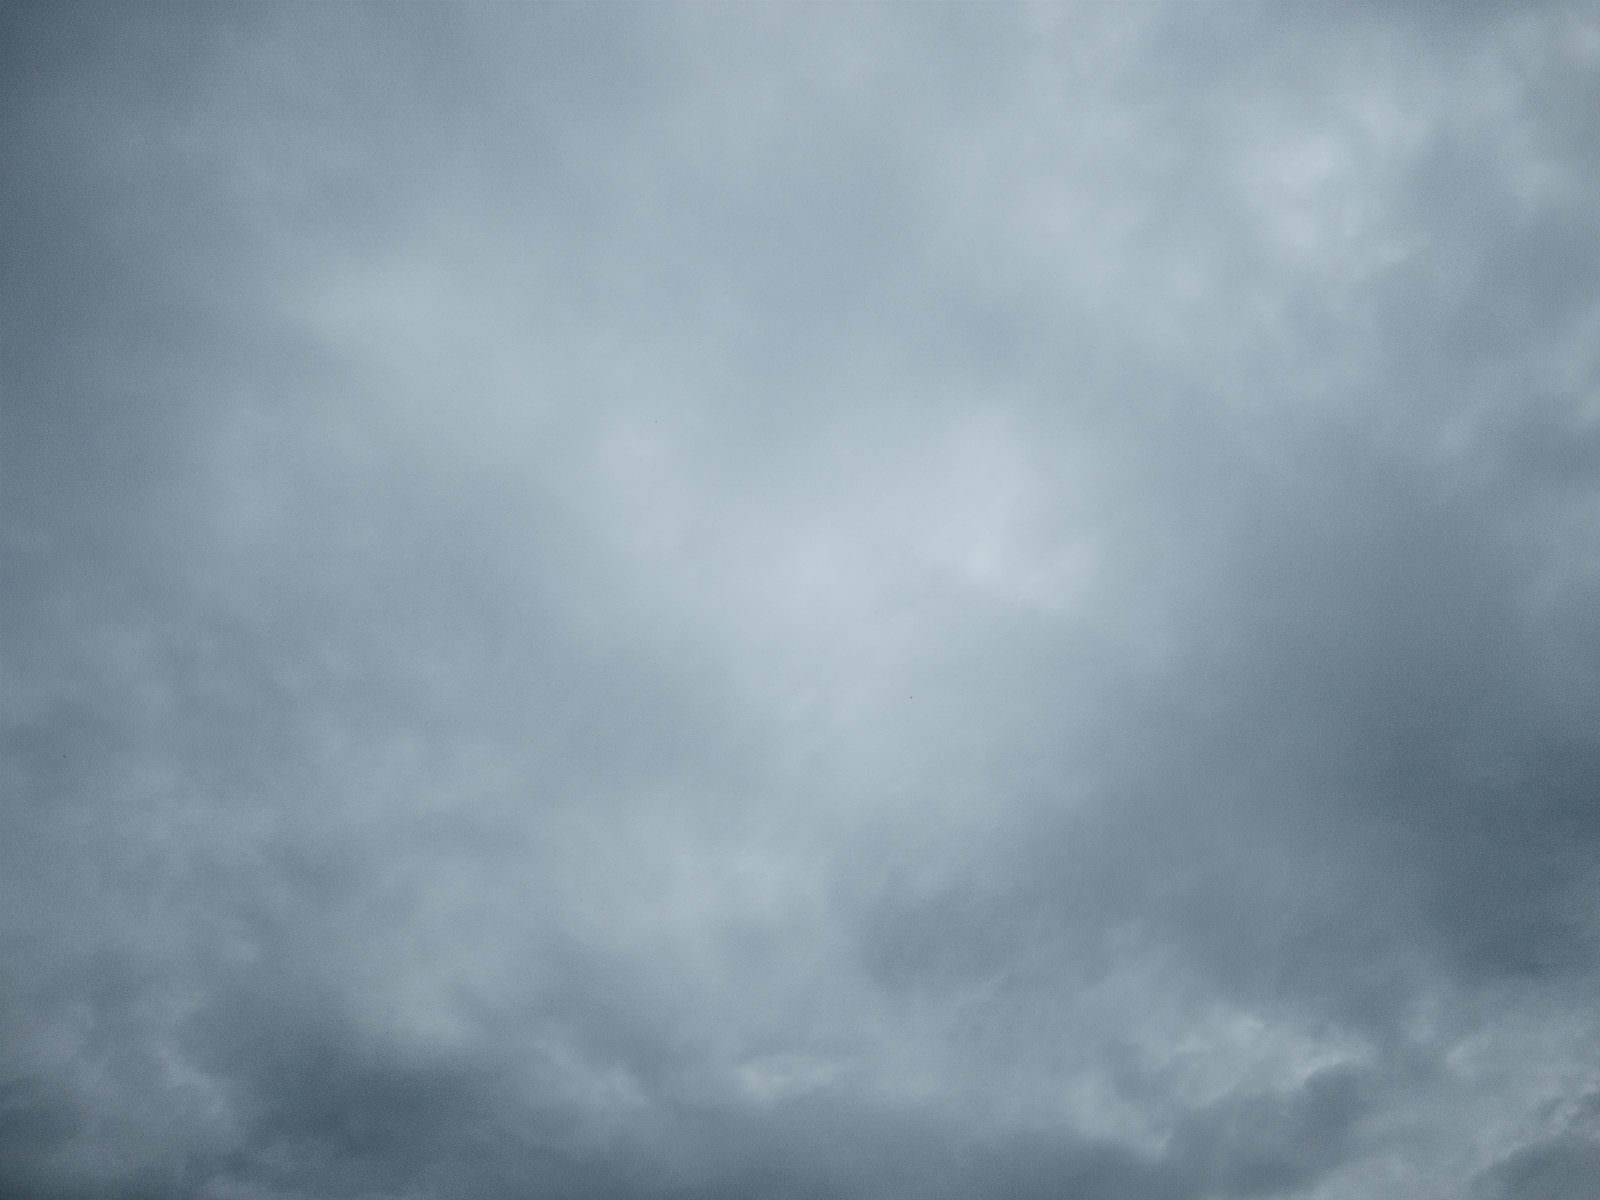 「どんより曇った空のテクスチャー | フリー素材のぱくたそ」の写真